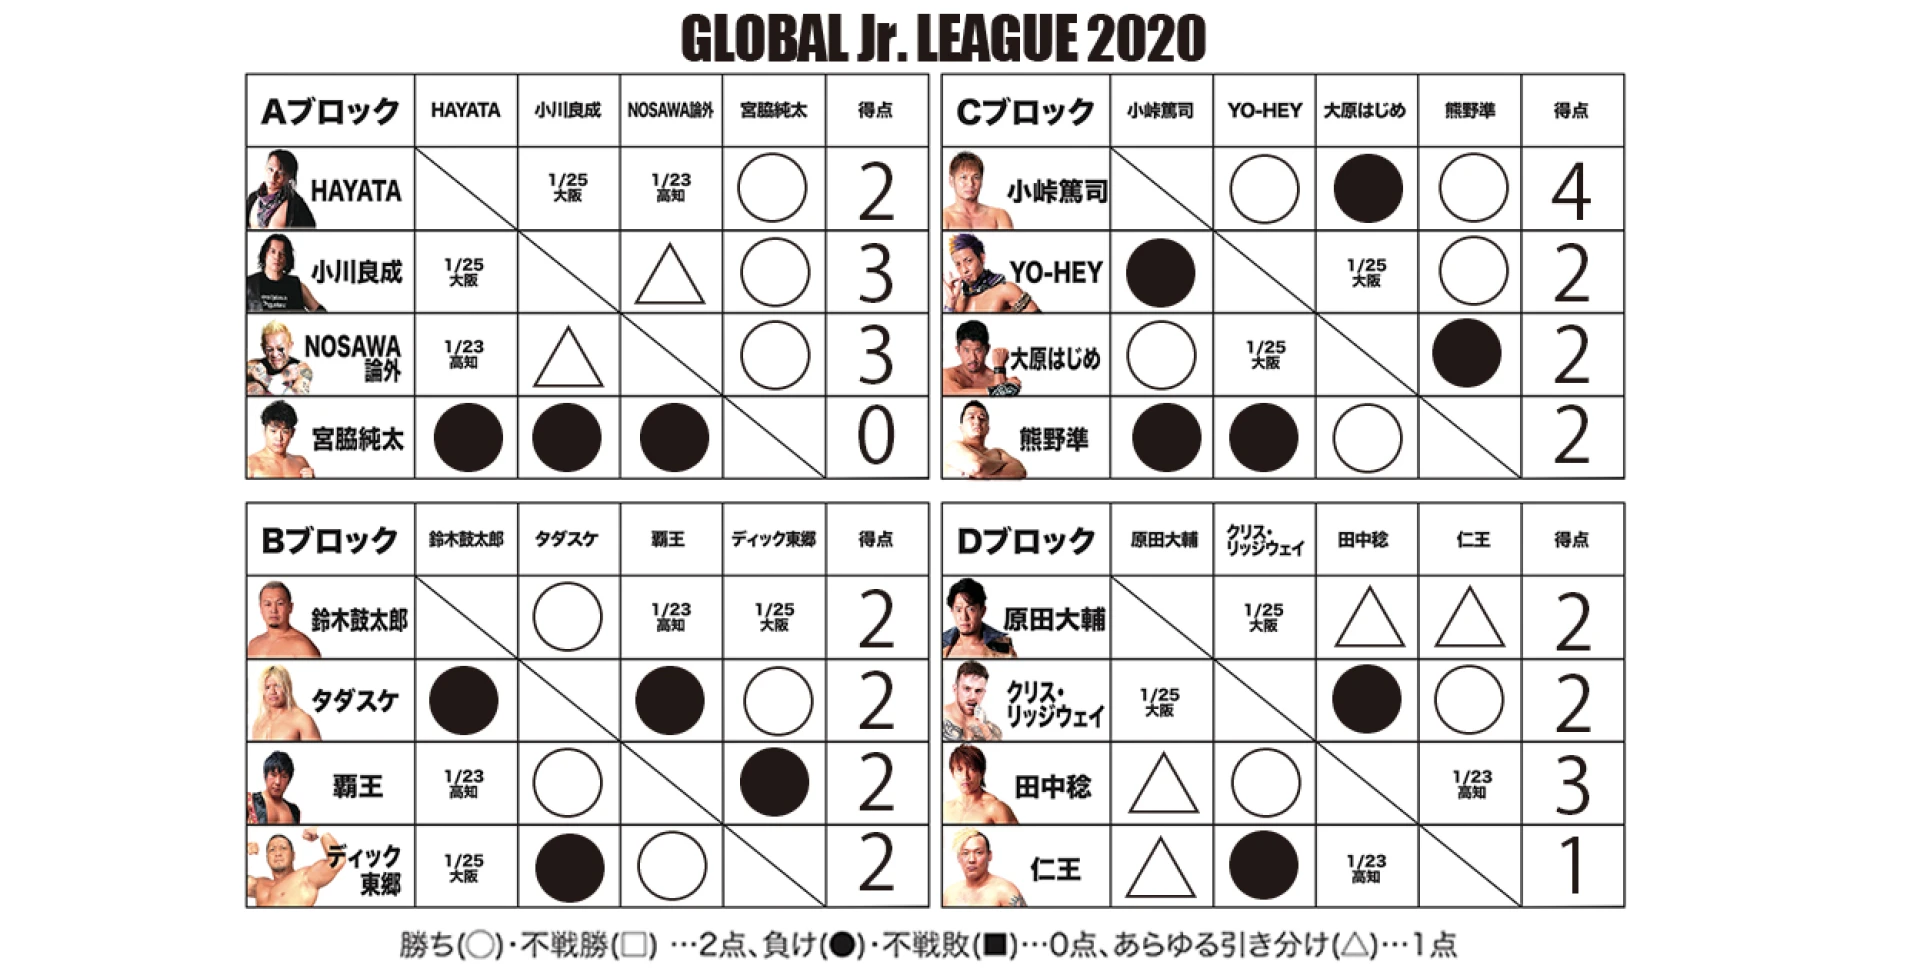 【1･22福岡終了時点】GLOBAL Jr. LEAGUE 2020 得点表